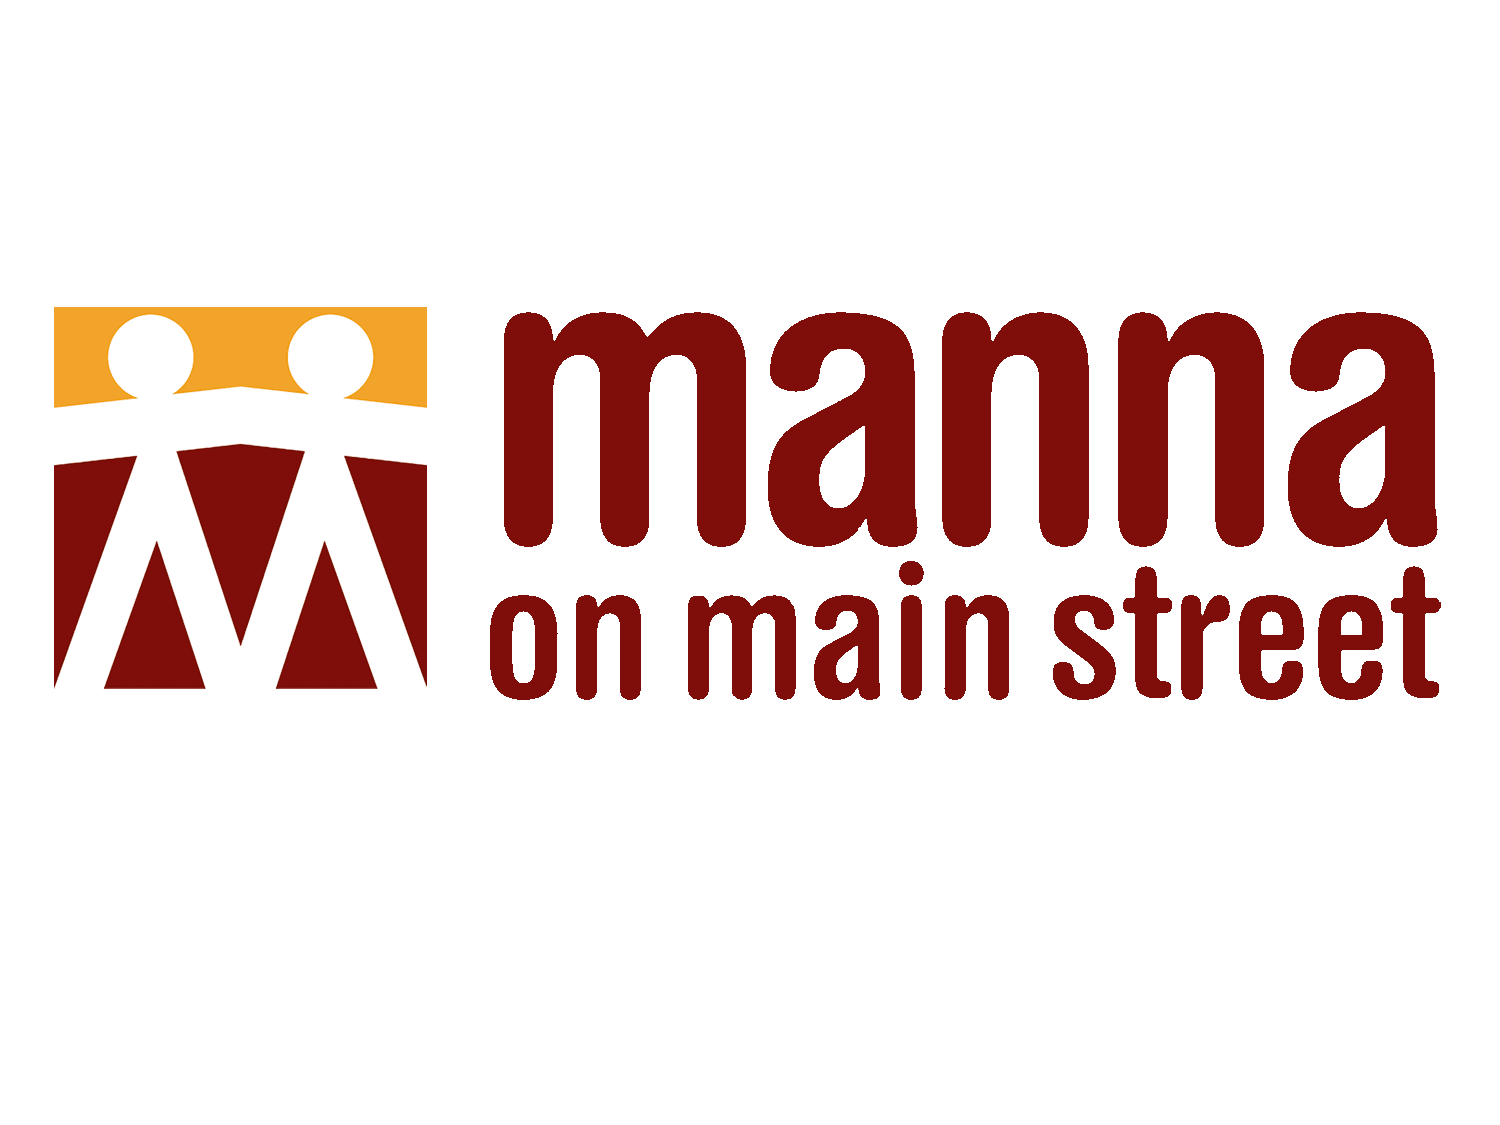 Manna on Main St